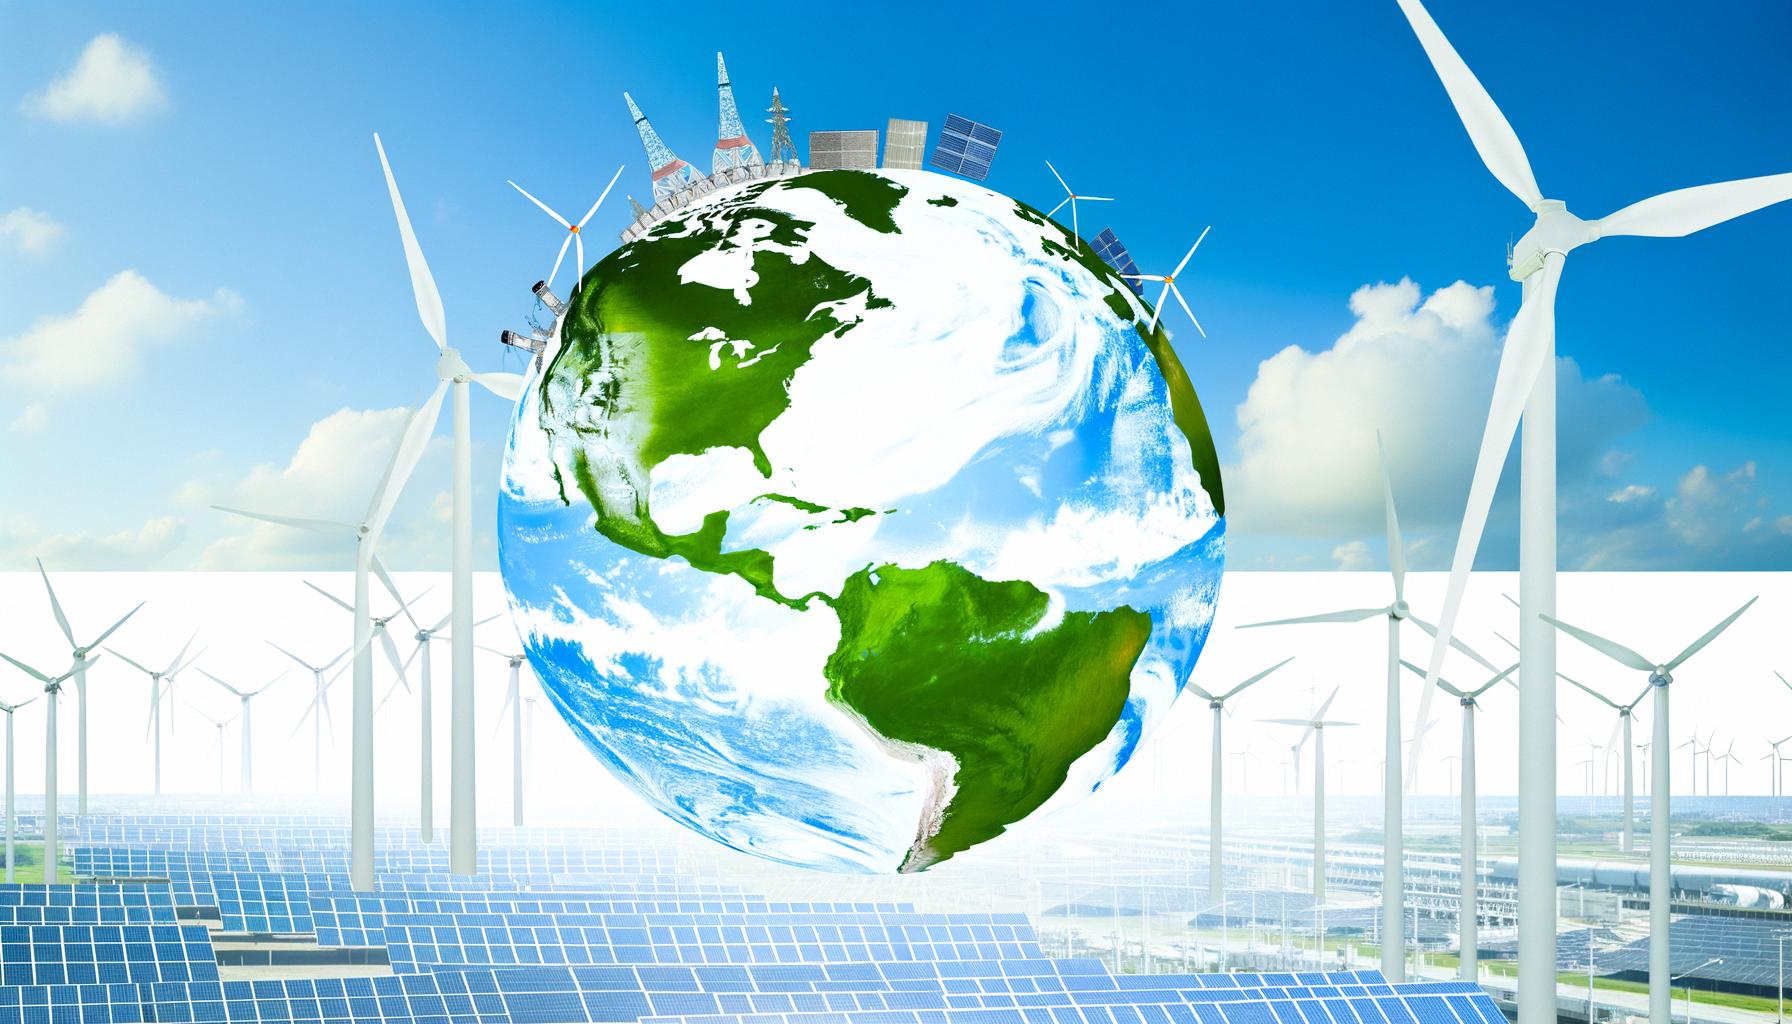 Global renewable energy exceeds 30%, showing historic shift